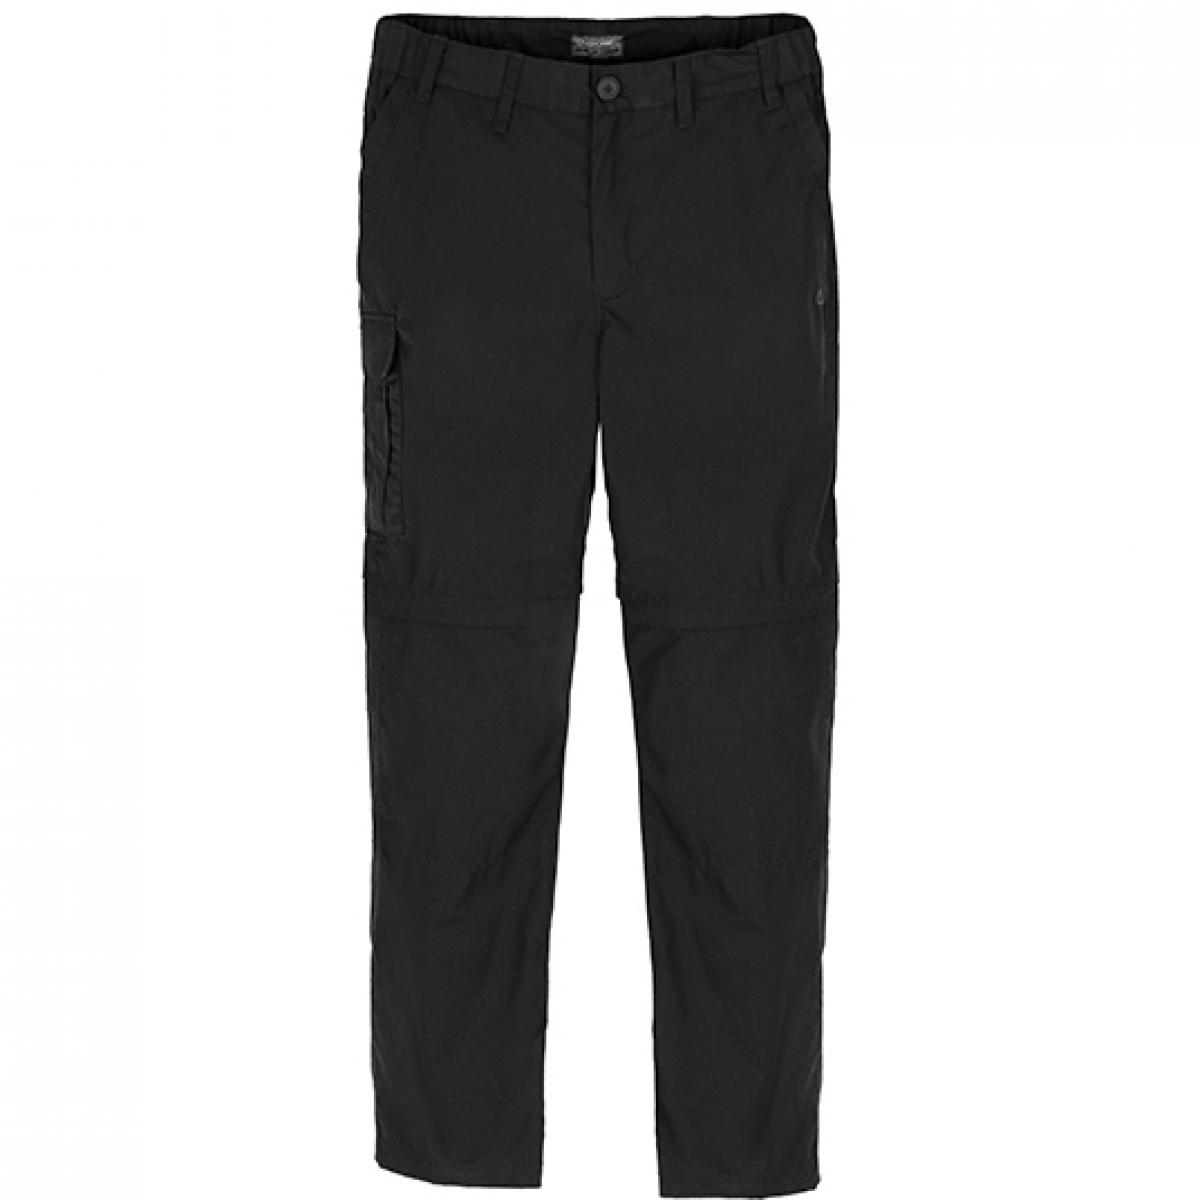 Hersteller: Craghoppers Expert Herstellernummer: CEJ005 Artikelbezeichnung: Expert Kiwi Tailored Convertible Trousers - Arbeitshose Farbe: Black